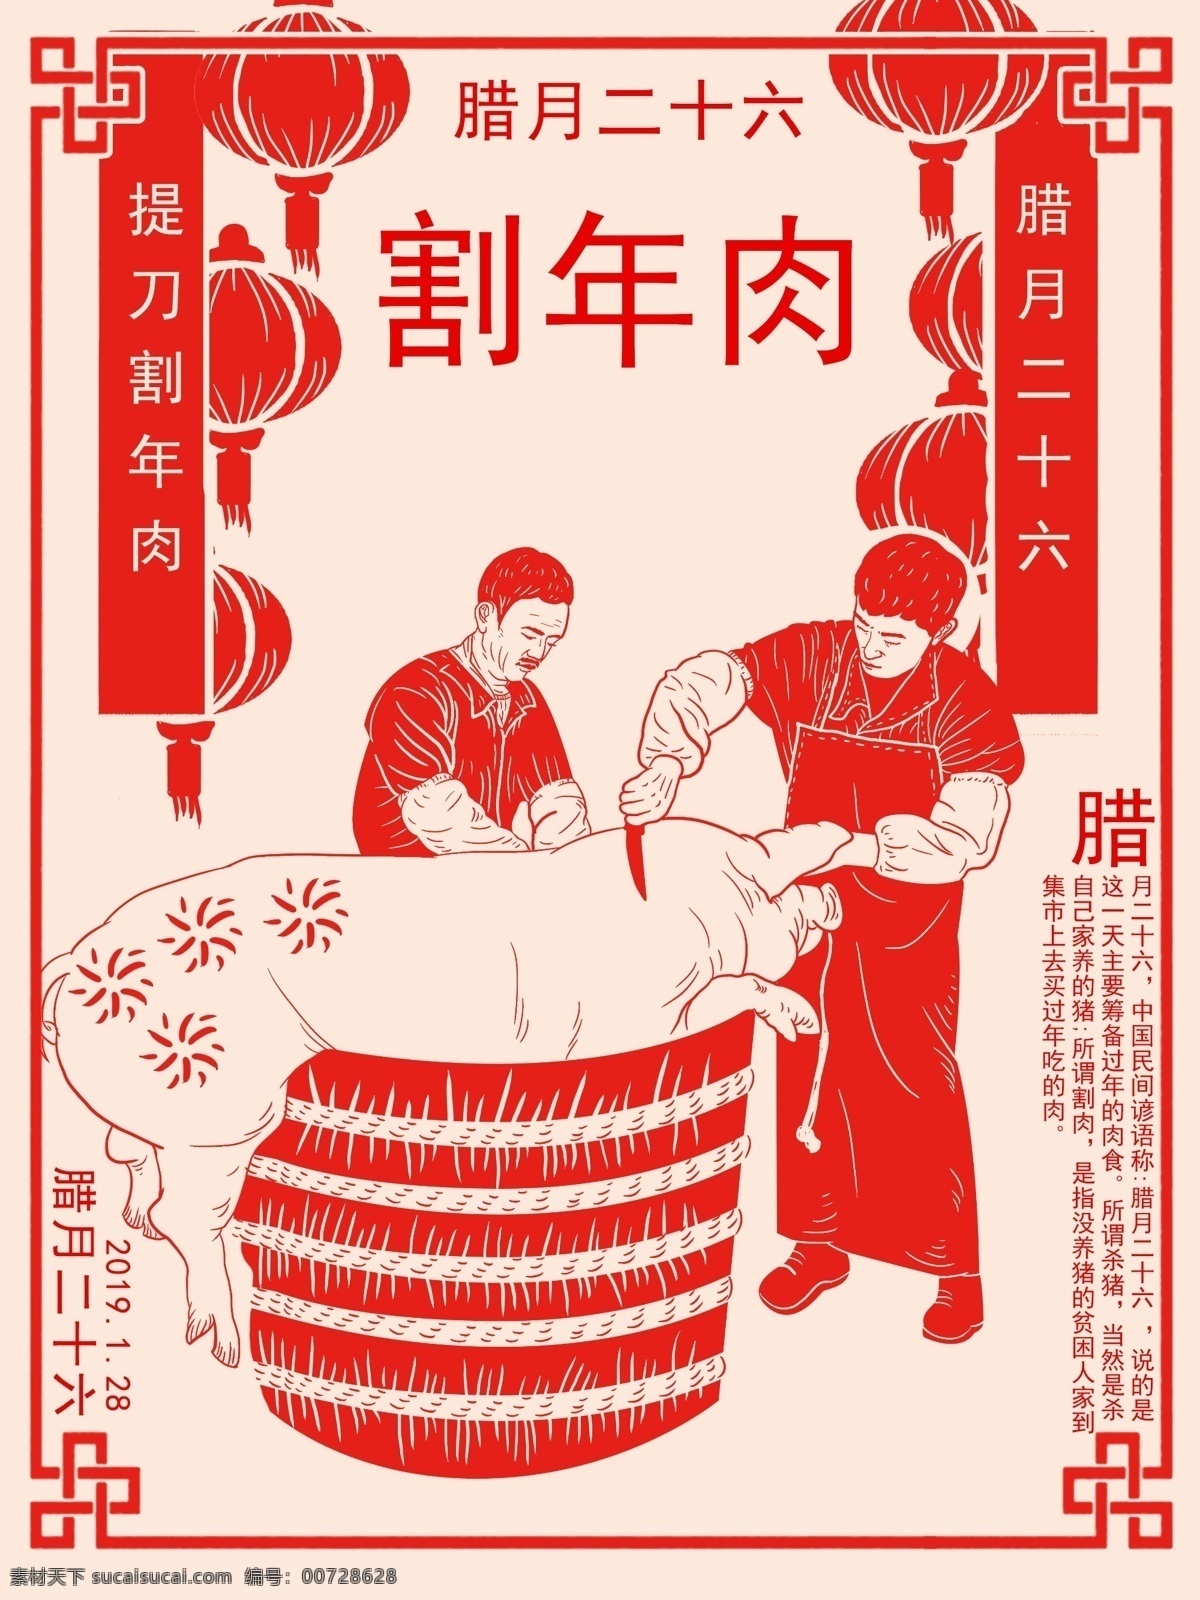 腊月 二 十 六 割 年 肉 扁平 风 中国 剪纸 割肉 过年 插画 春节 喜庆 灯笼 割年肉 二十六 中国节气 围裙 猪 桶子 杀猪